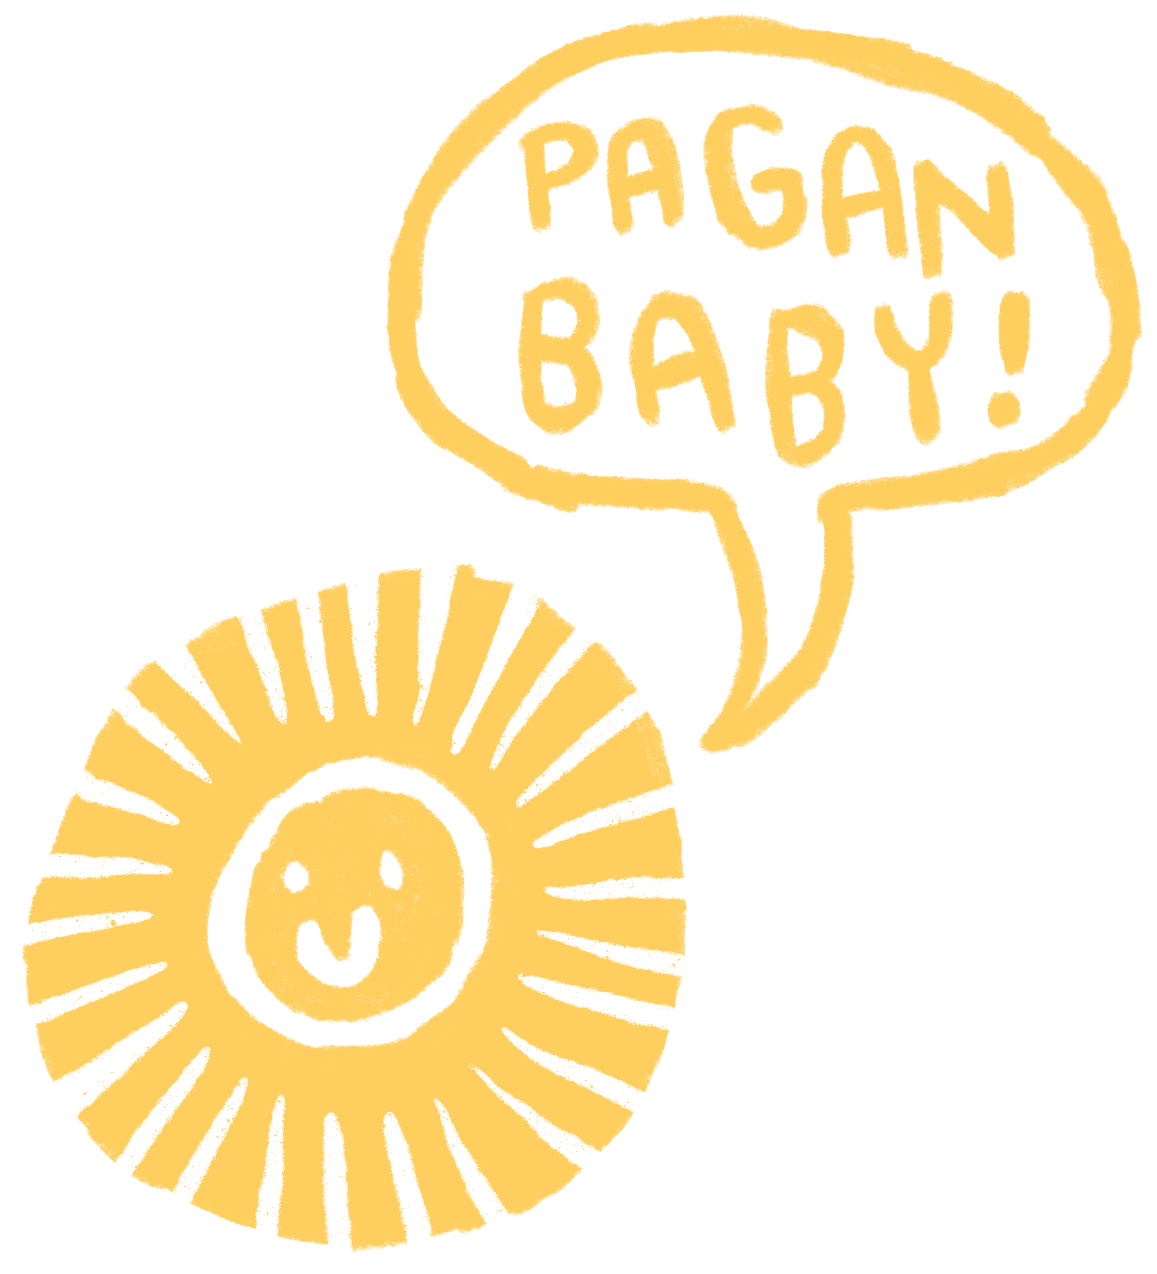 The Pagan Baby